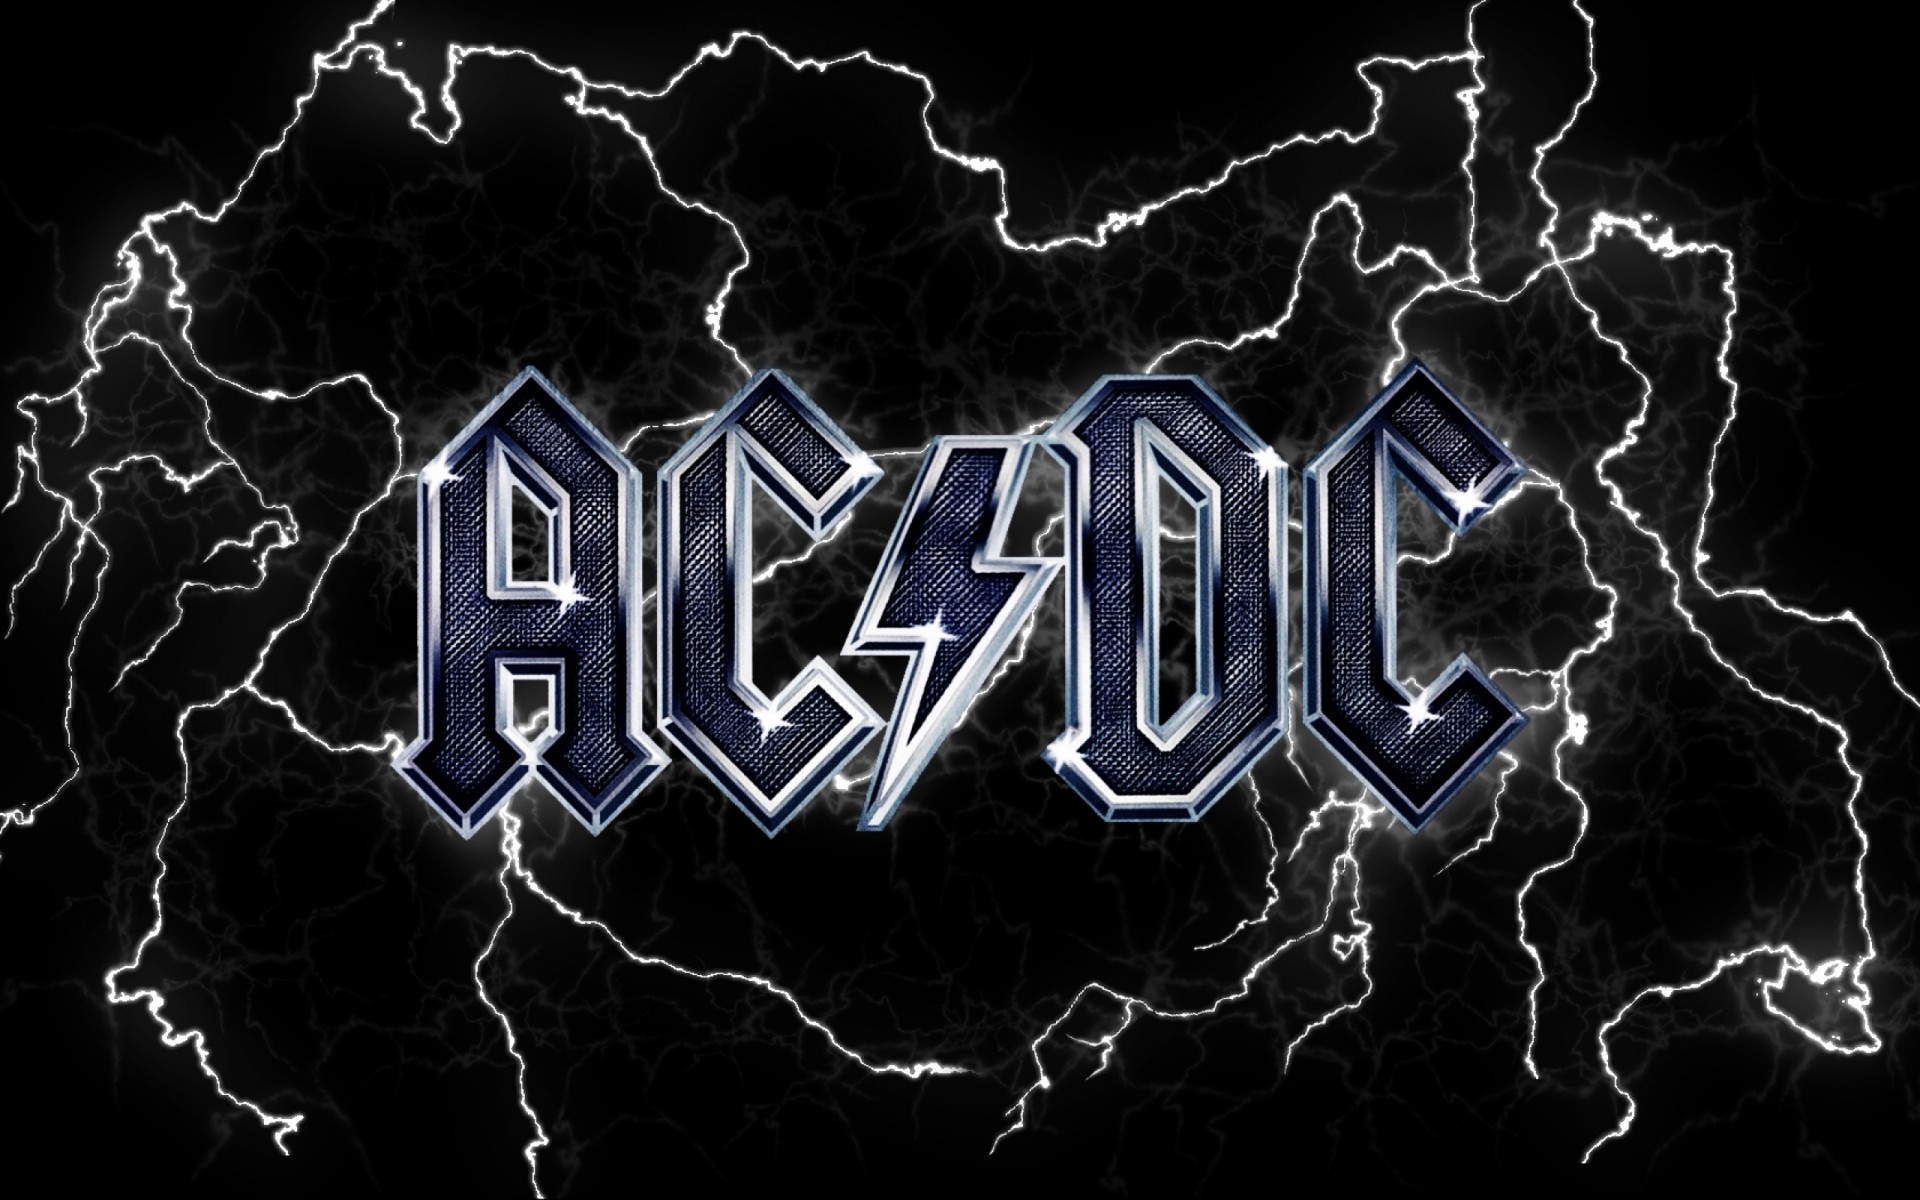 bands abstract desktop design dark illustration symbol acdc acdc logo background